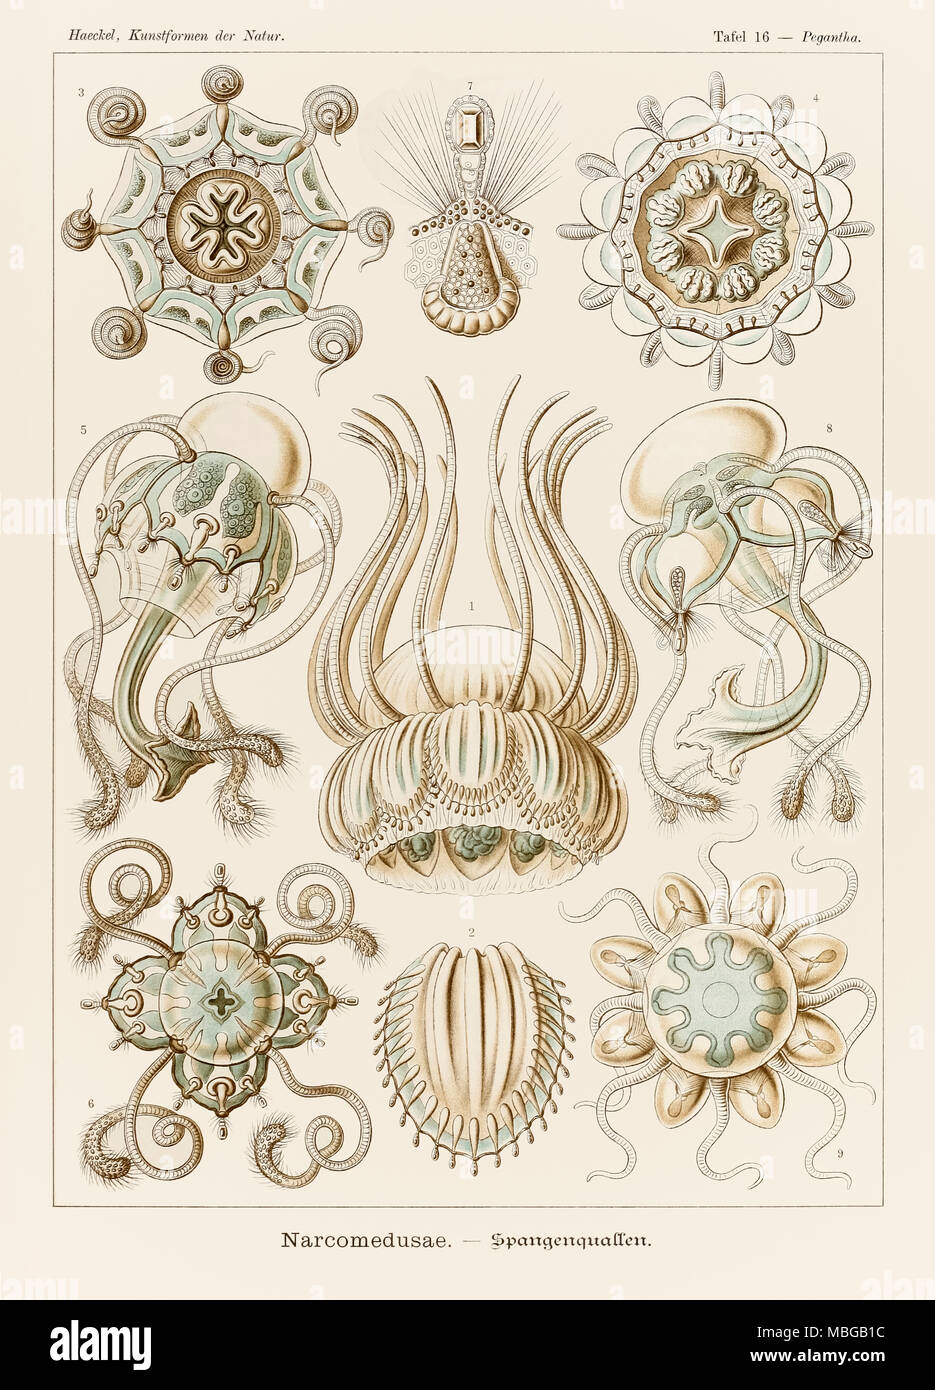 16 Pegantha Narcomedusae plaque de 'Kunstformen der Natur' (formes d'art dans la Nature) illustrée par Ernst Haeckel (1834-1919). Voir plus d'informations ci-dessous. Banque D'Images